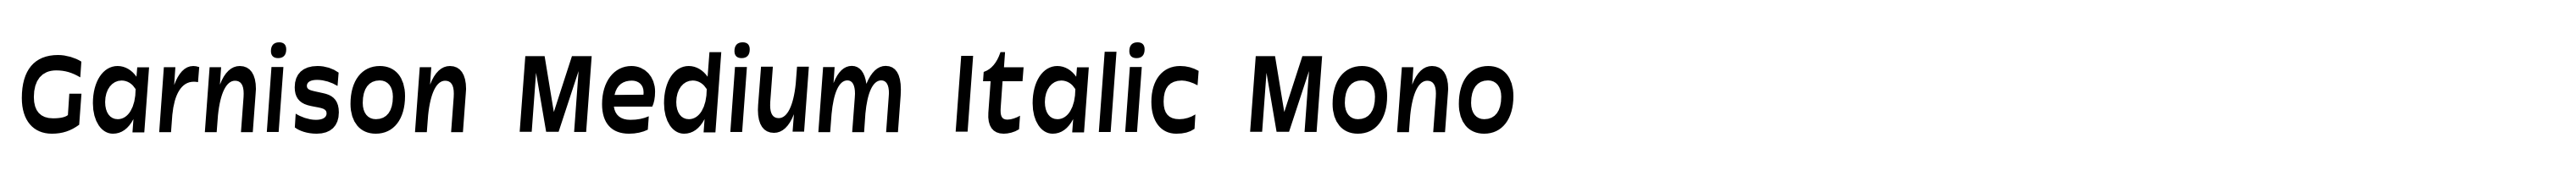 Garnison Medium Italic Mono